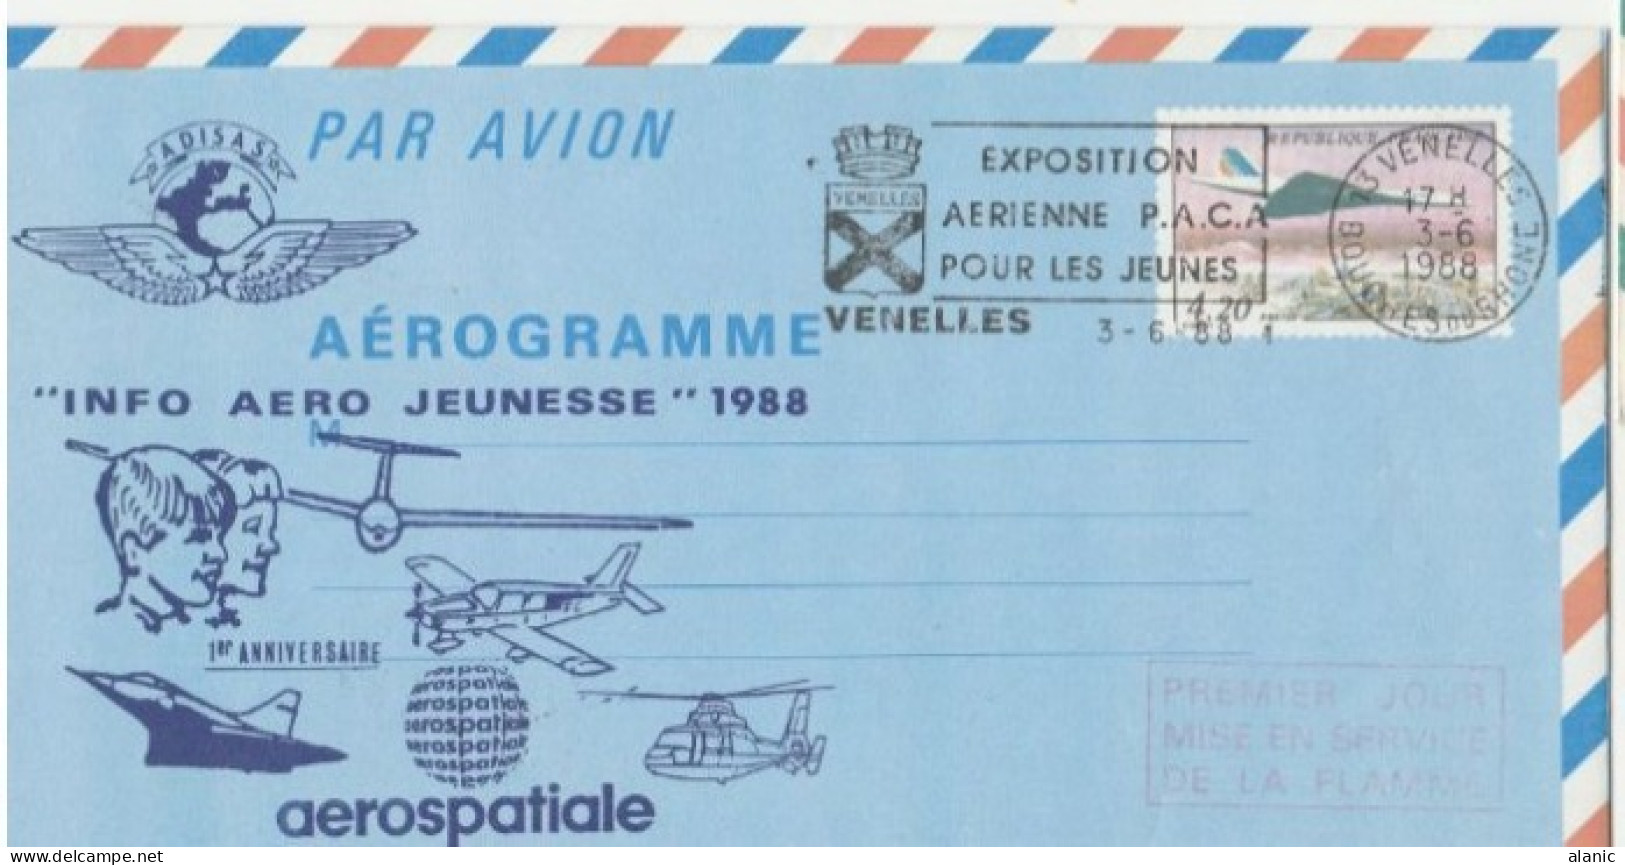 EP Aérogramme 4,20 Concorde "Info Aero Jeunesse 1988-VENELLES 3-6-1988 Repiquage 1er Anniversaire Aérospatiale -TBE- - Aerograms